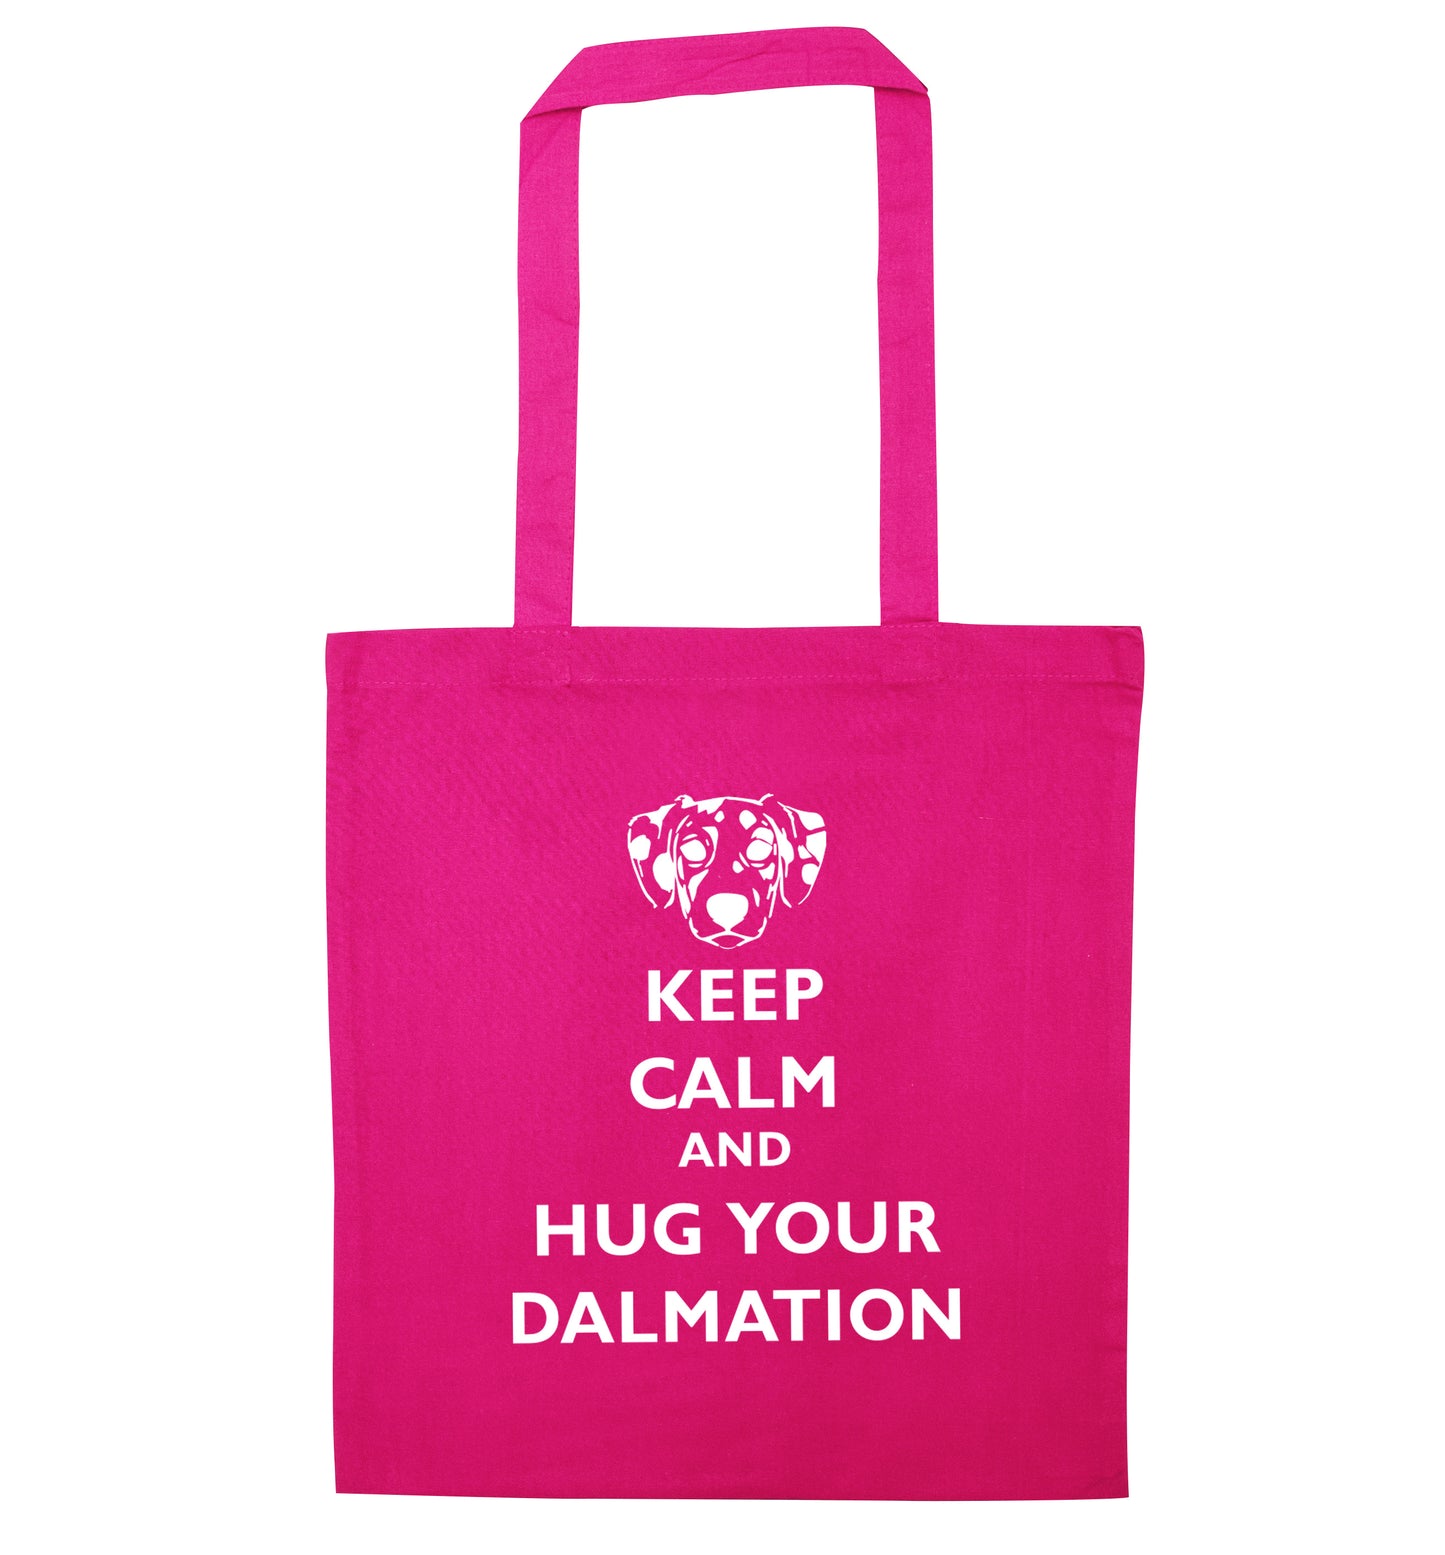 Keep calm and hug your dalmation pink tote bag